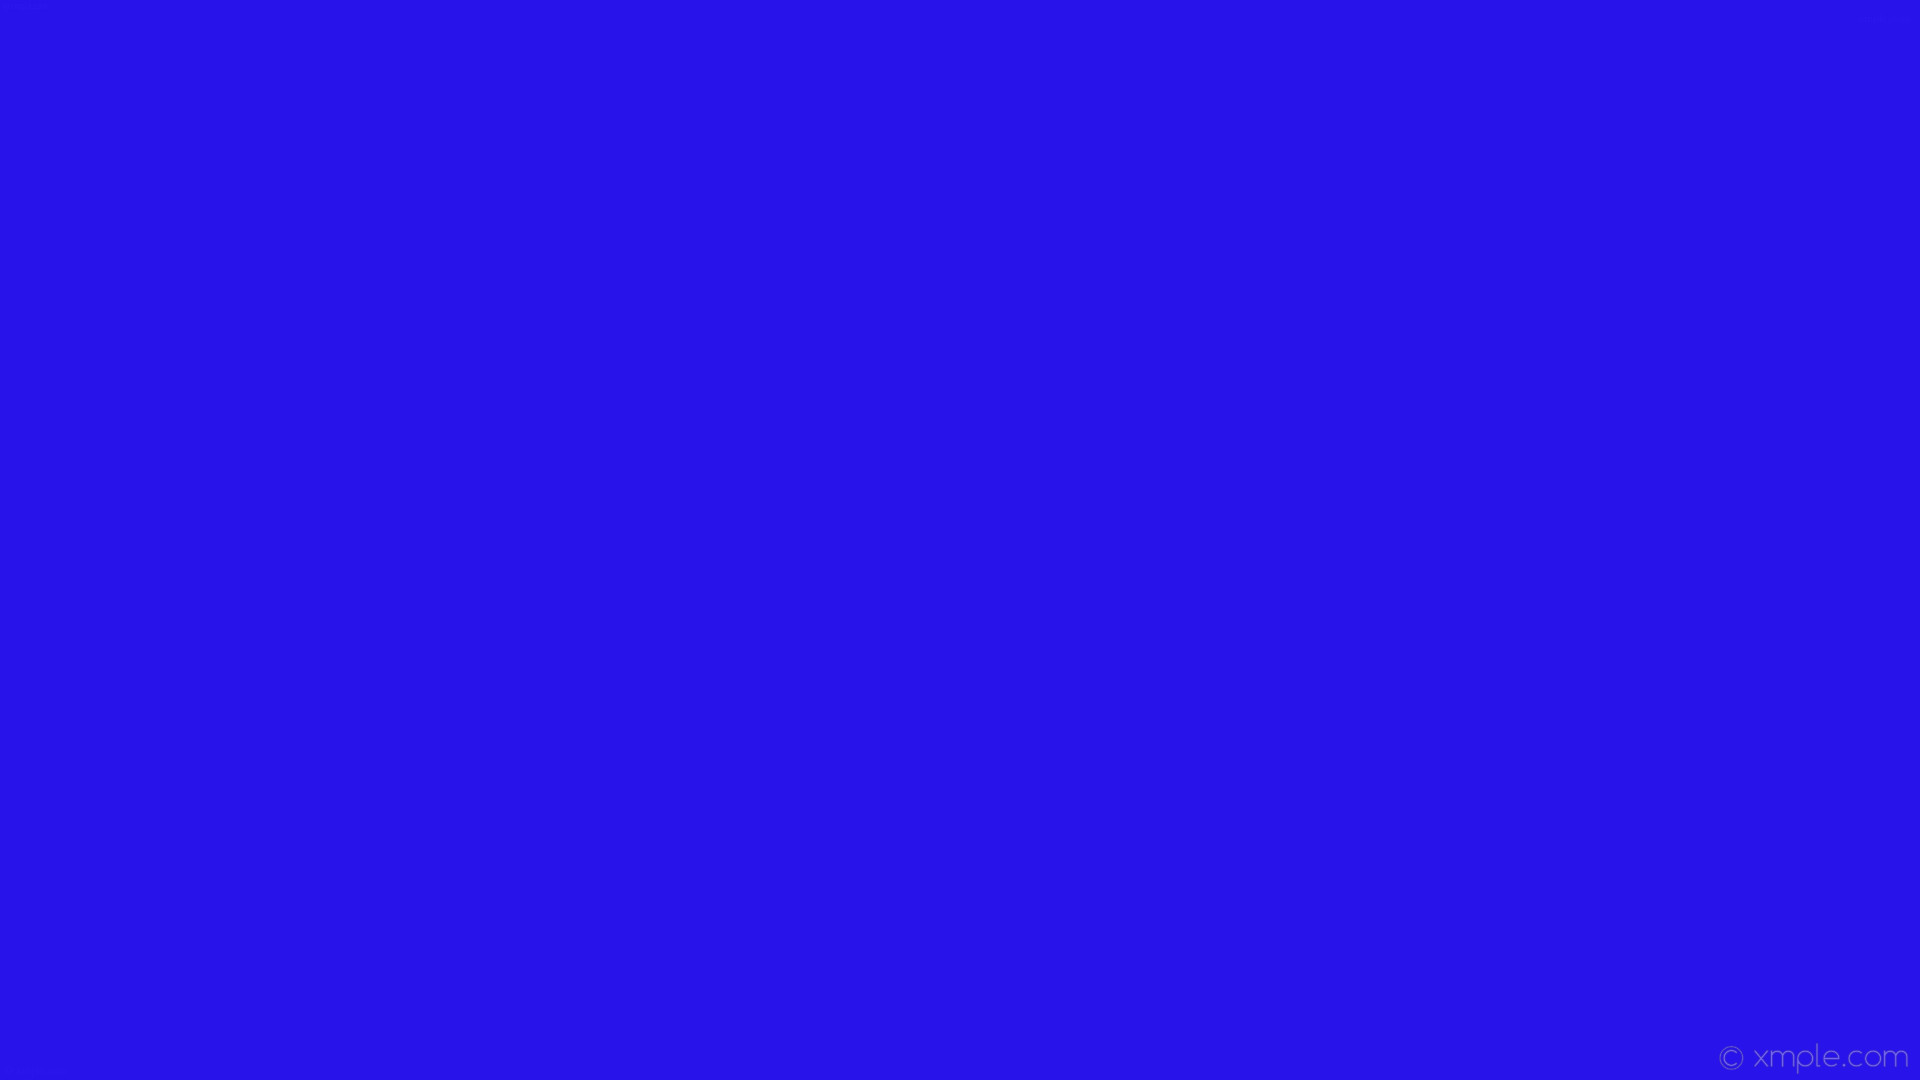 1920x1080 wallpaper blue single plain solid color one colour #2913eb